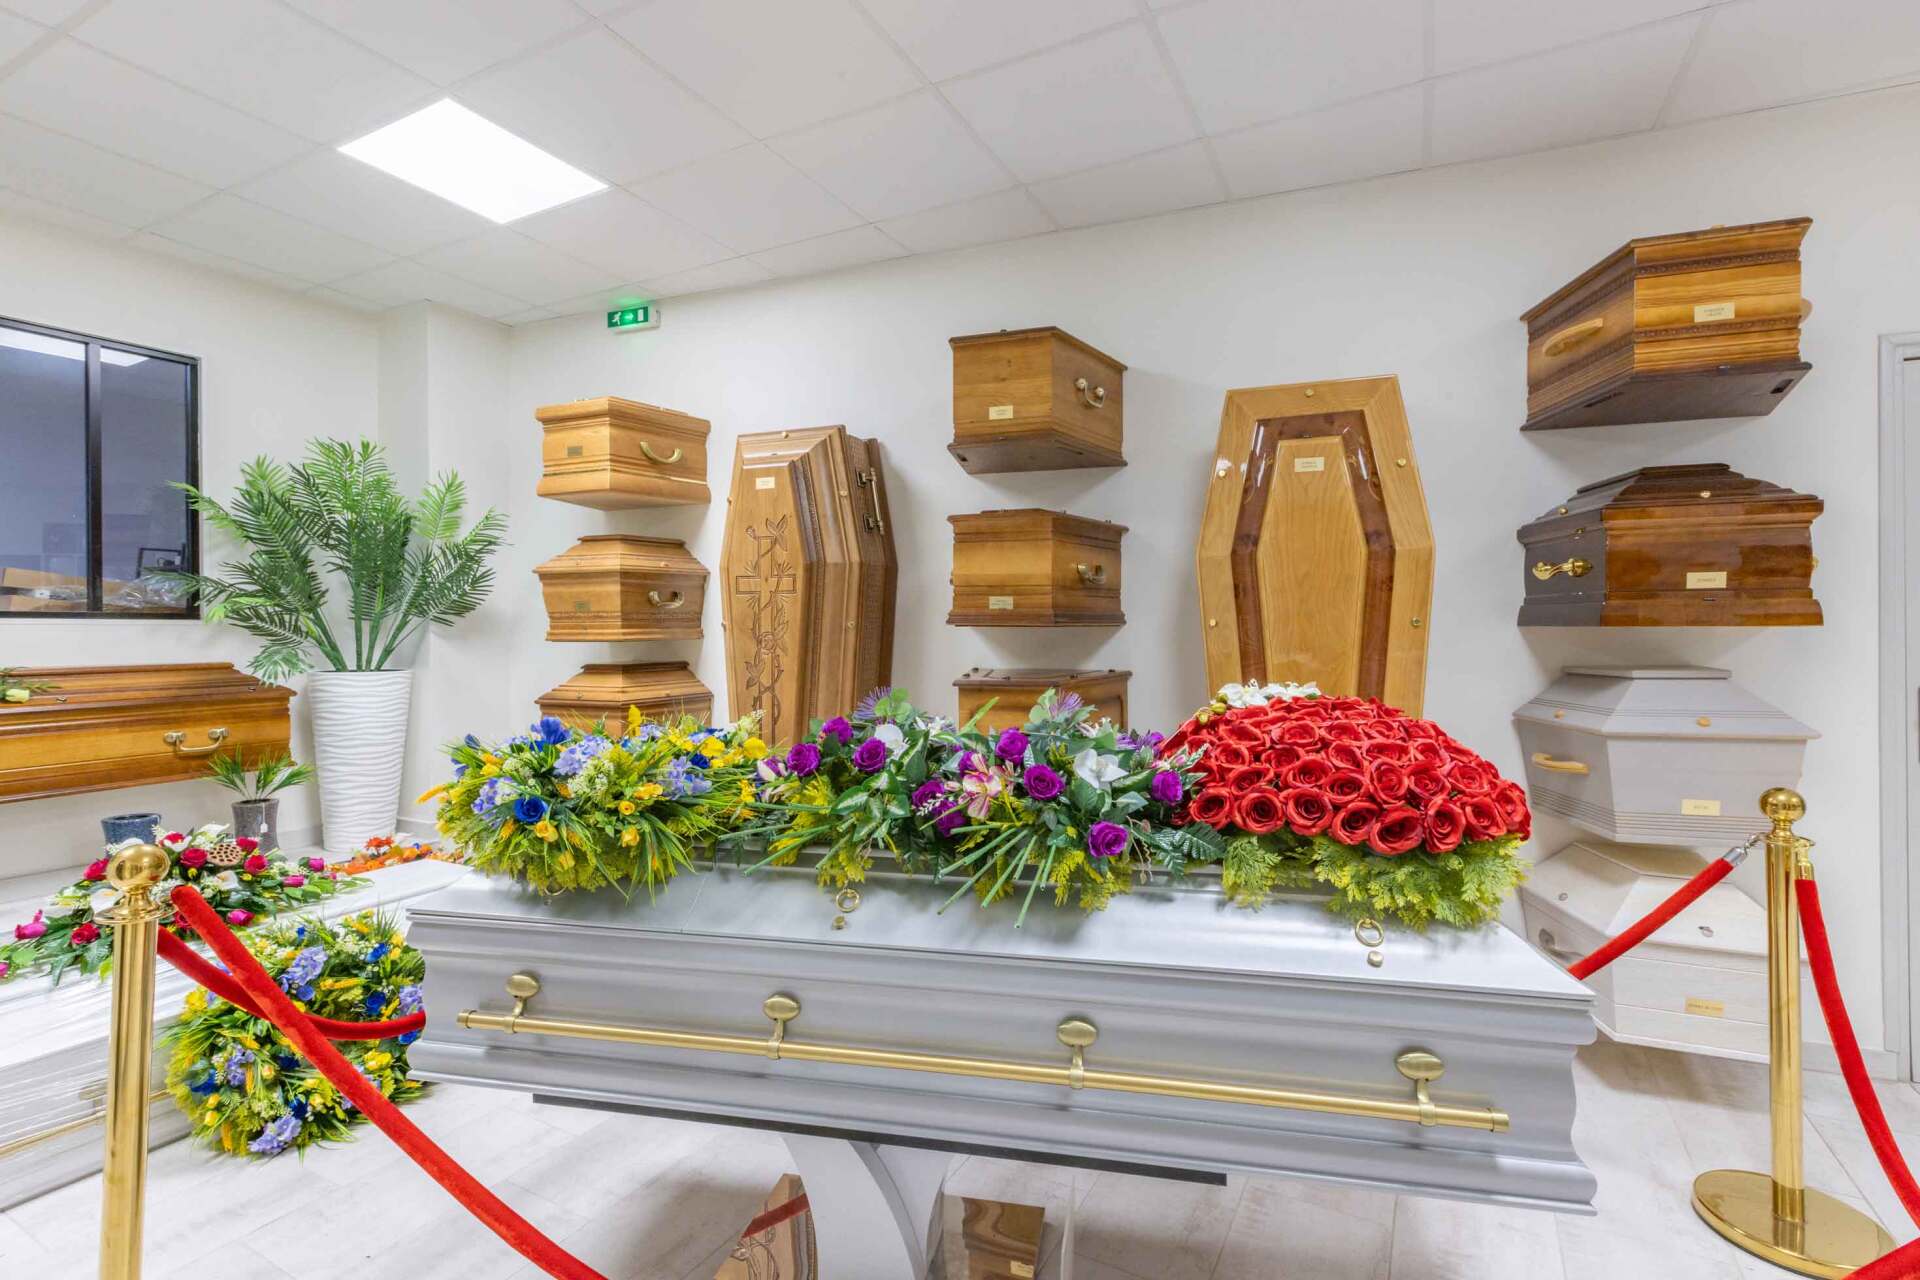 Présentation de différents cercueils, dont  un orné de fleurs